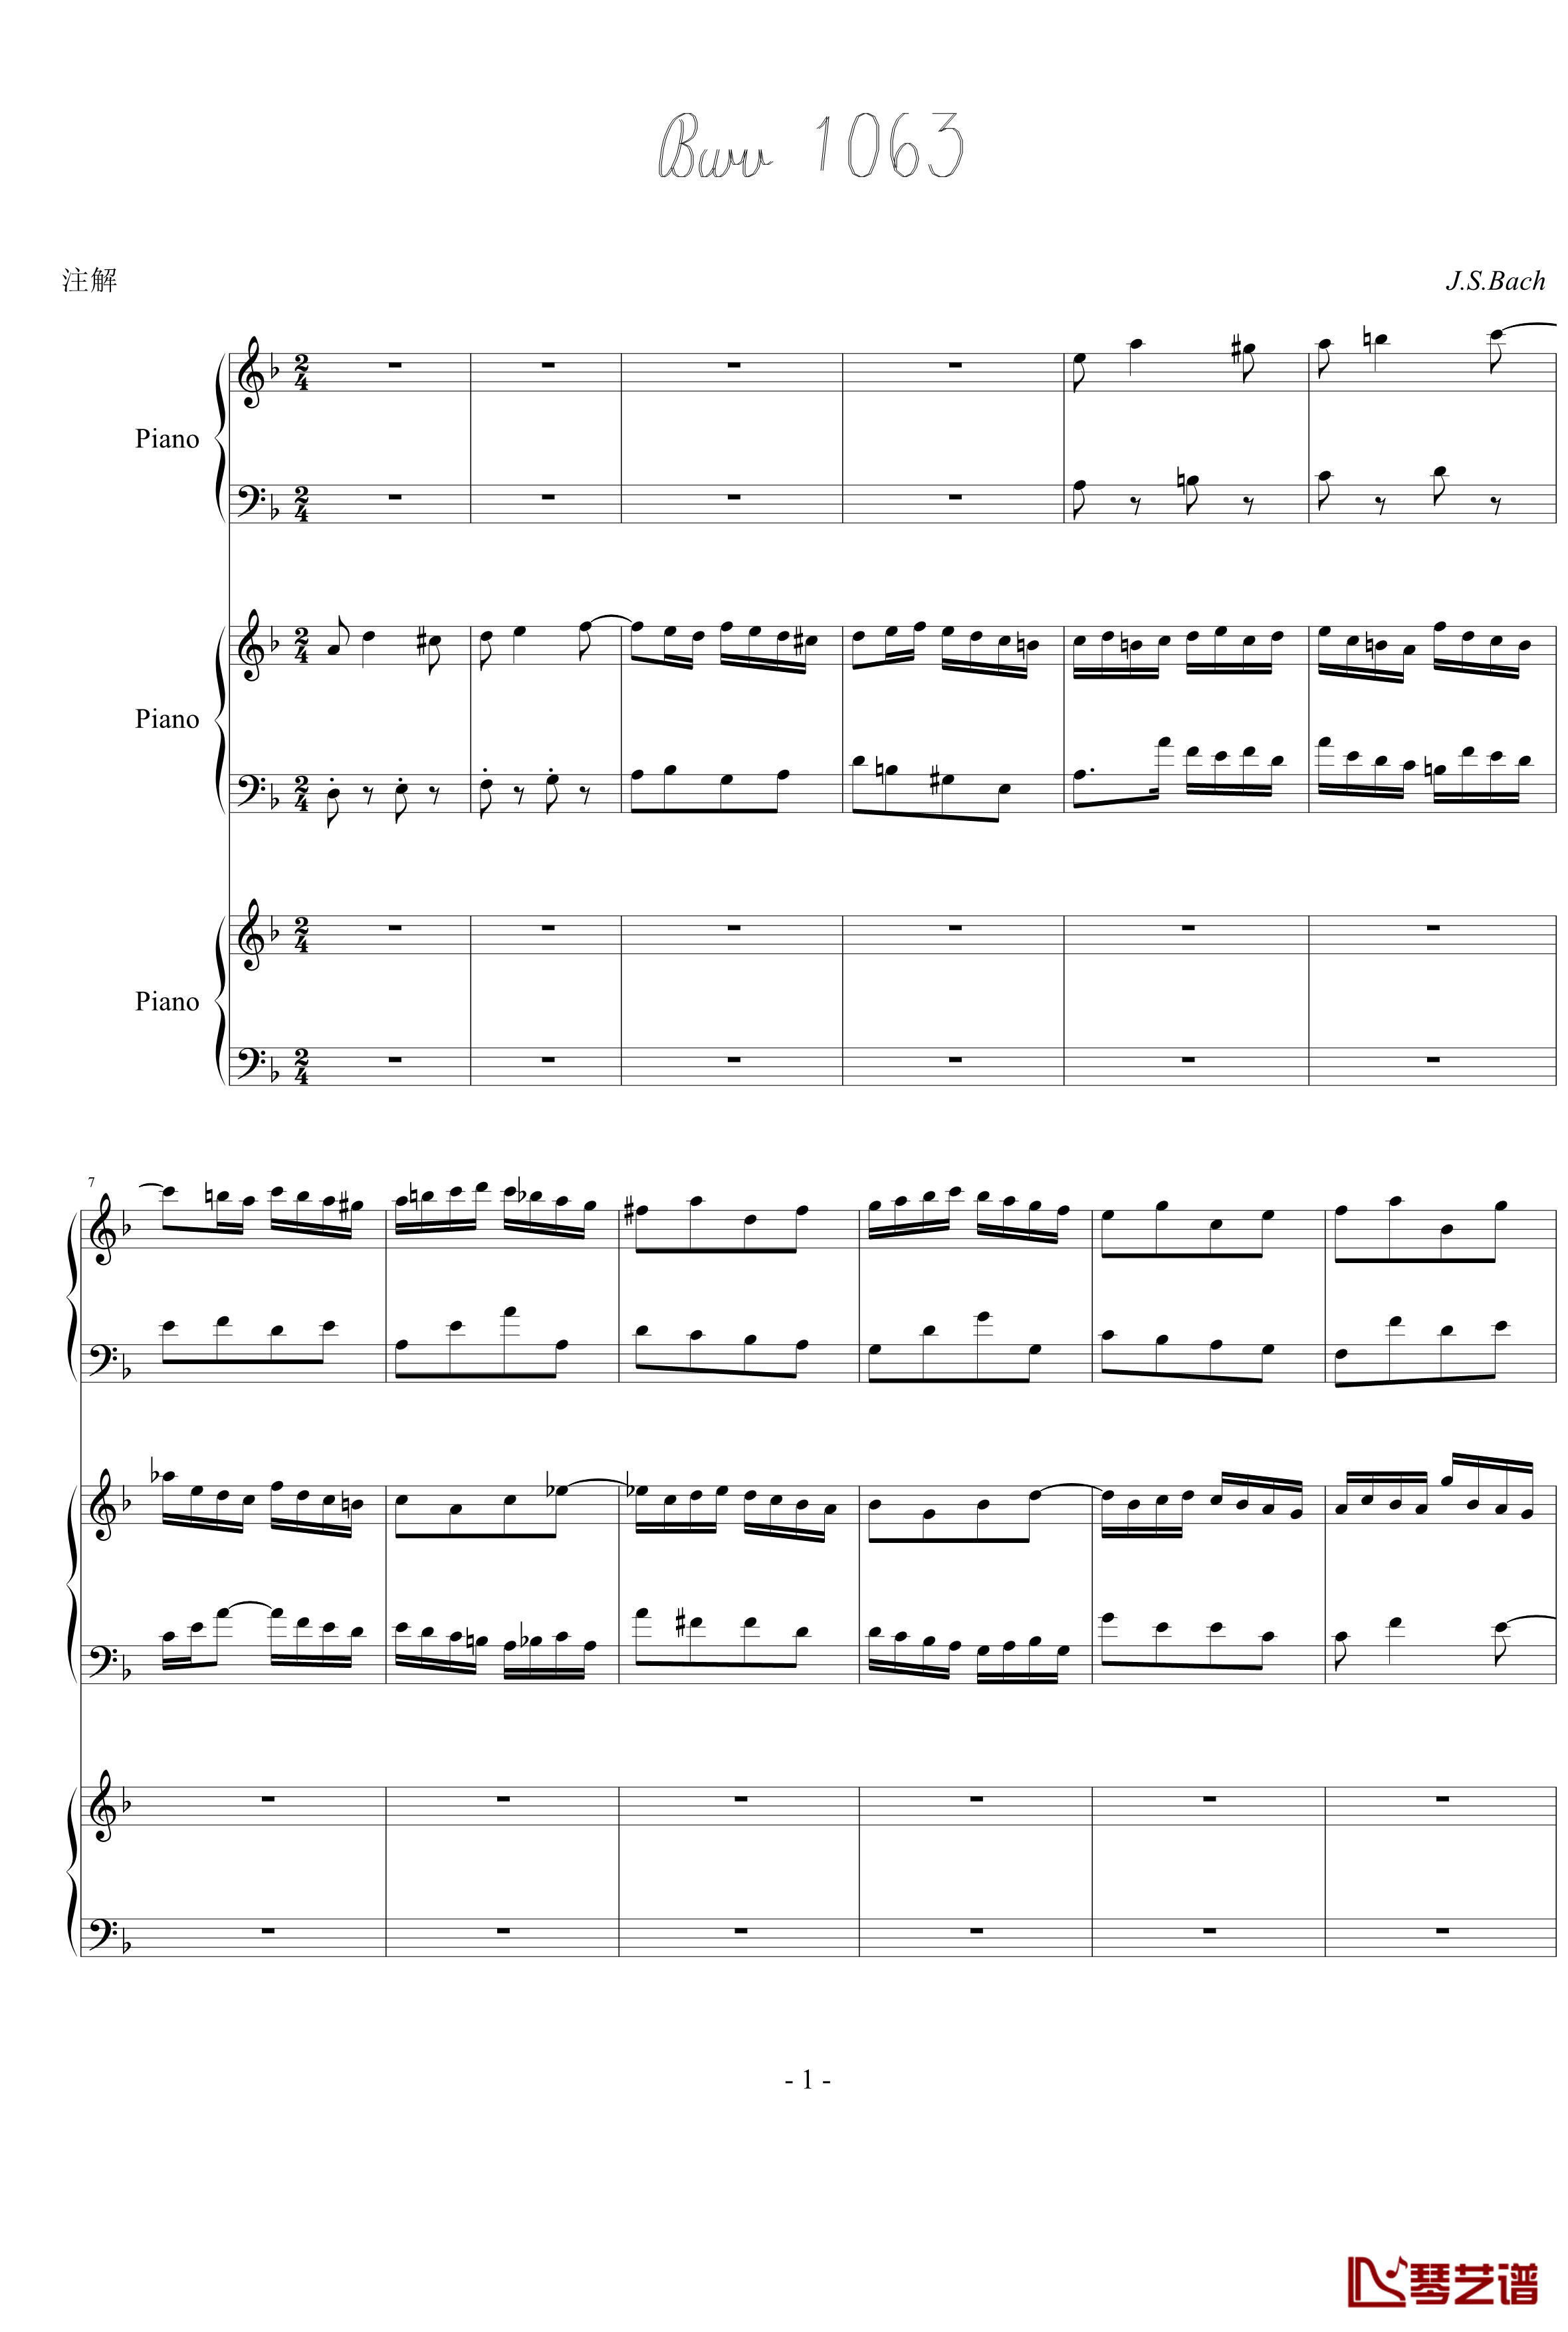 巴赫三键盘协奏曲钢琴谱-钢琴-巴赫-P.E.Bach1